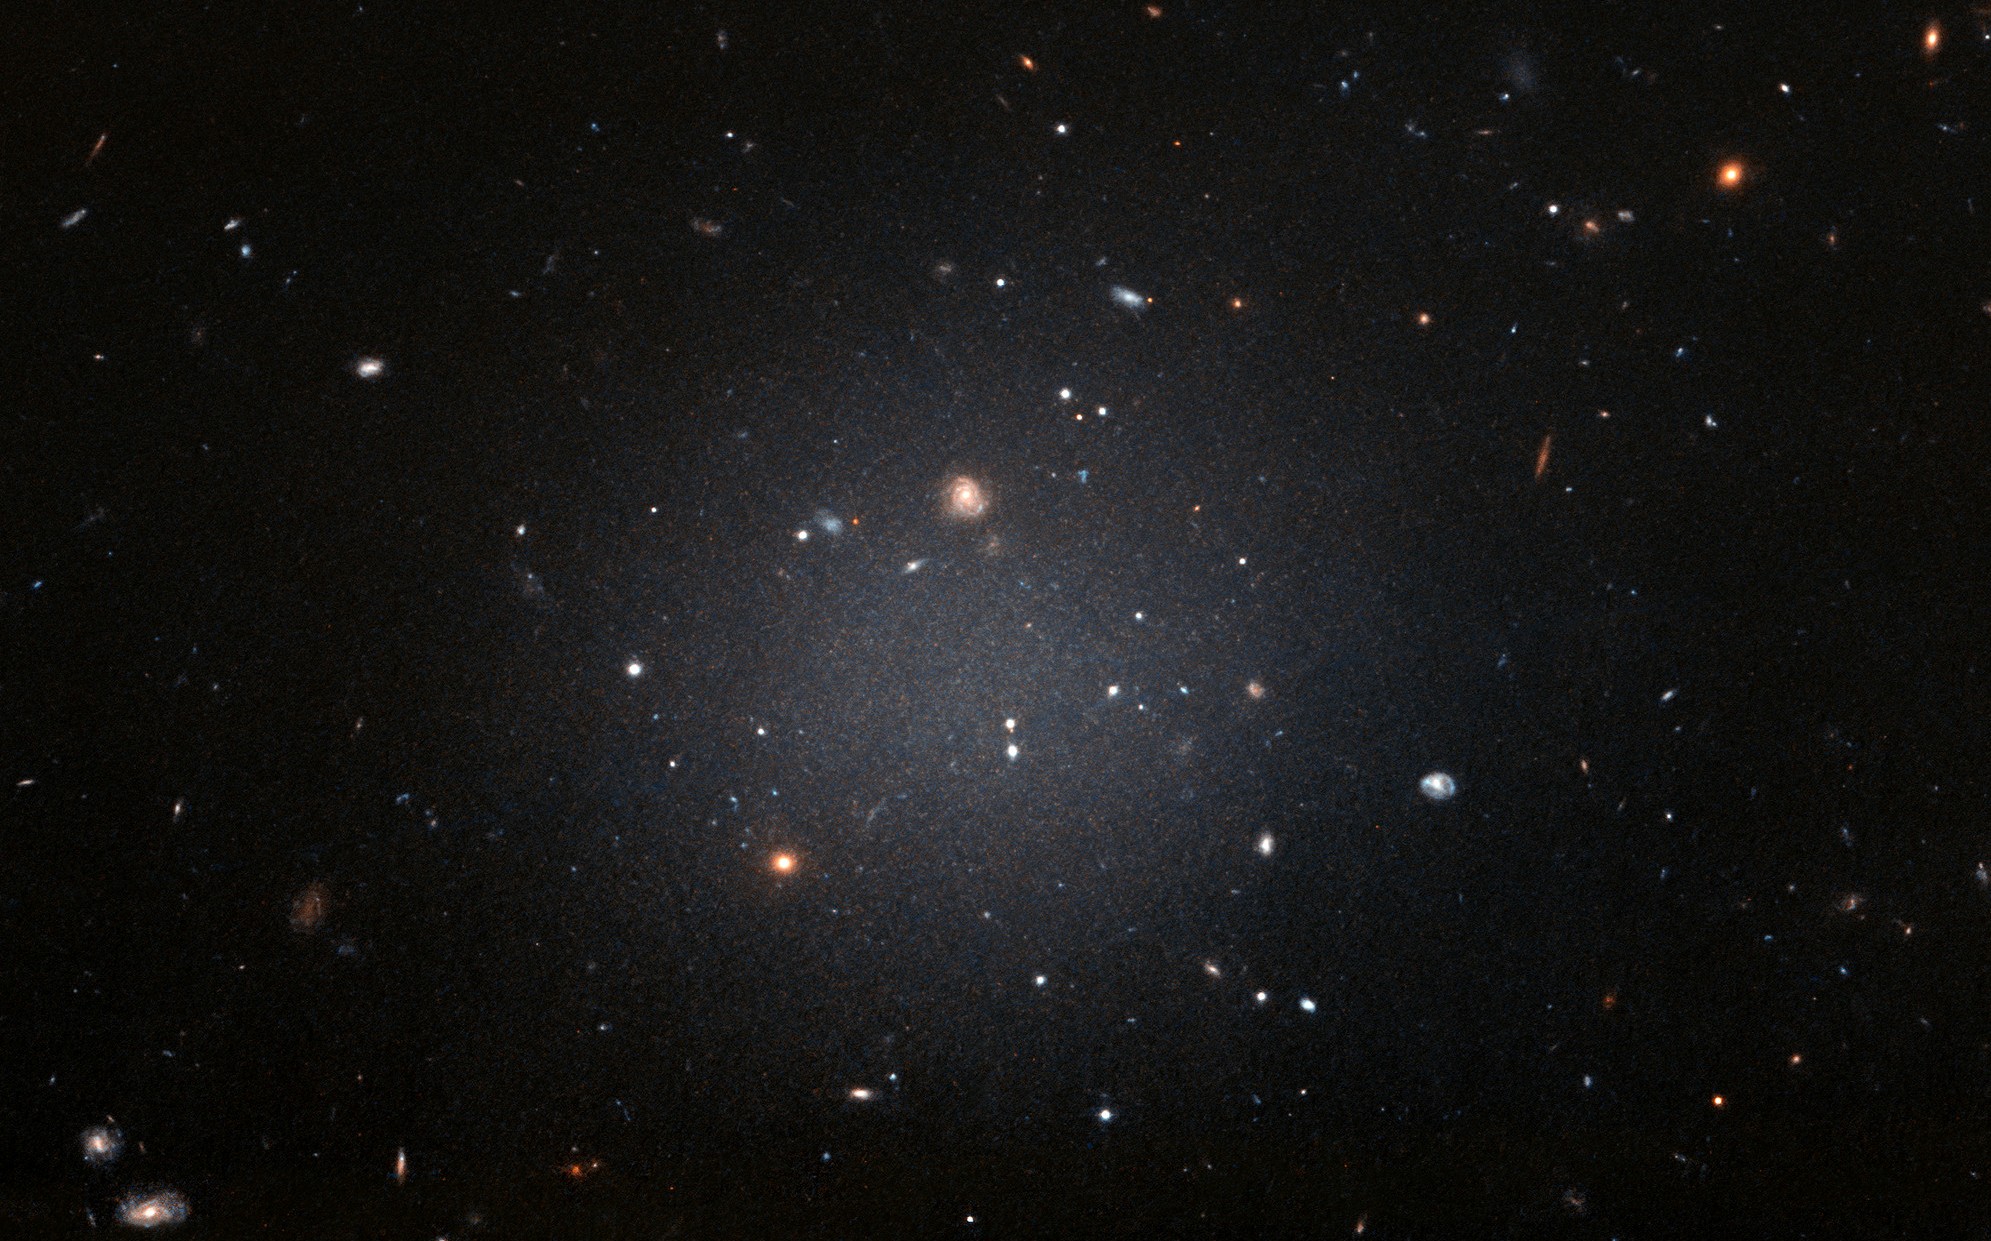 NGC 1052-DF2 réside dans le groupe dominé par une galaxie elliptique massive appelée NGC 1052. Cette grande galaxie à l'apparence floue est si diffuse que les astronomes peuvent voir clairement les galaxies lointaines derrière elle. Hubble a pris cette image le 16 novembre 2017 en utilisant son Advanced Camera for Surveys. © Nasa, ESA et P. van Dokkum (université de Yale)